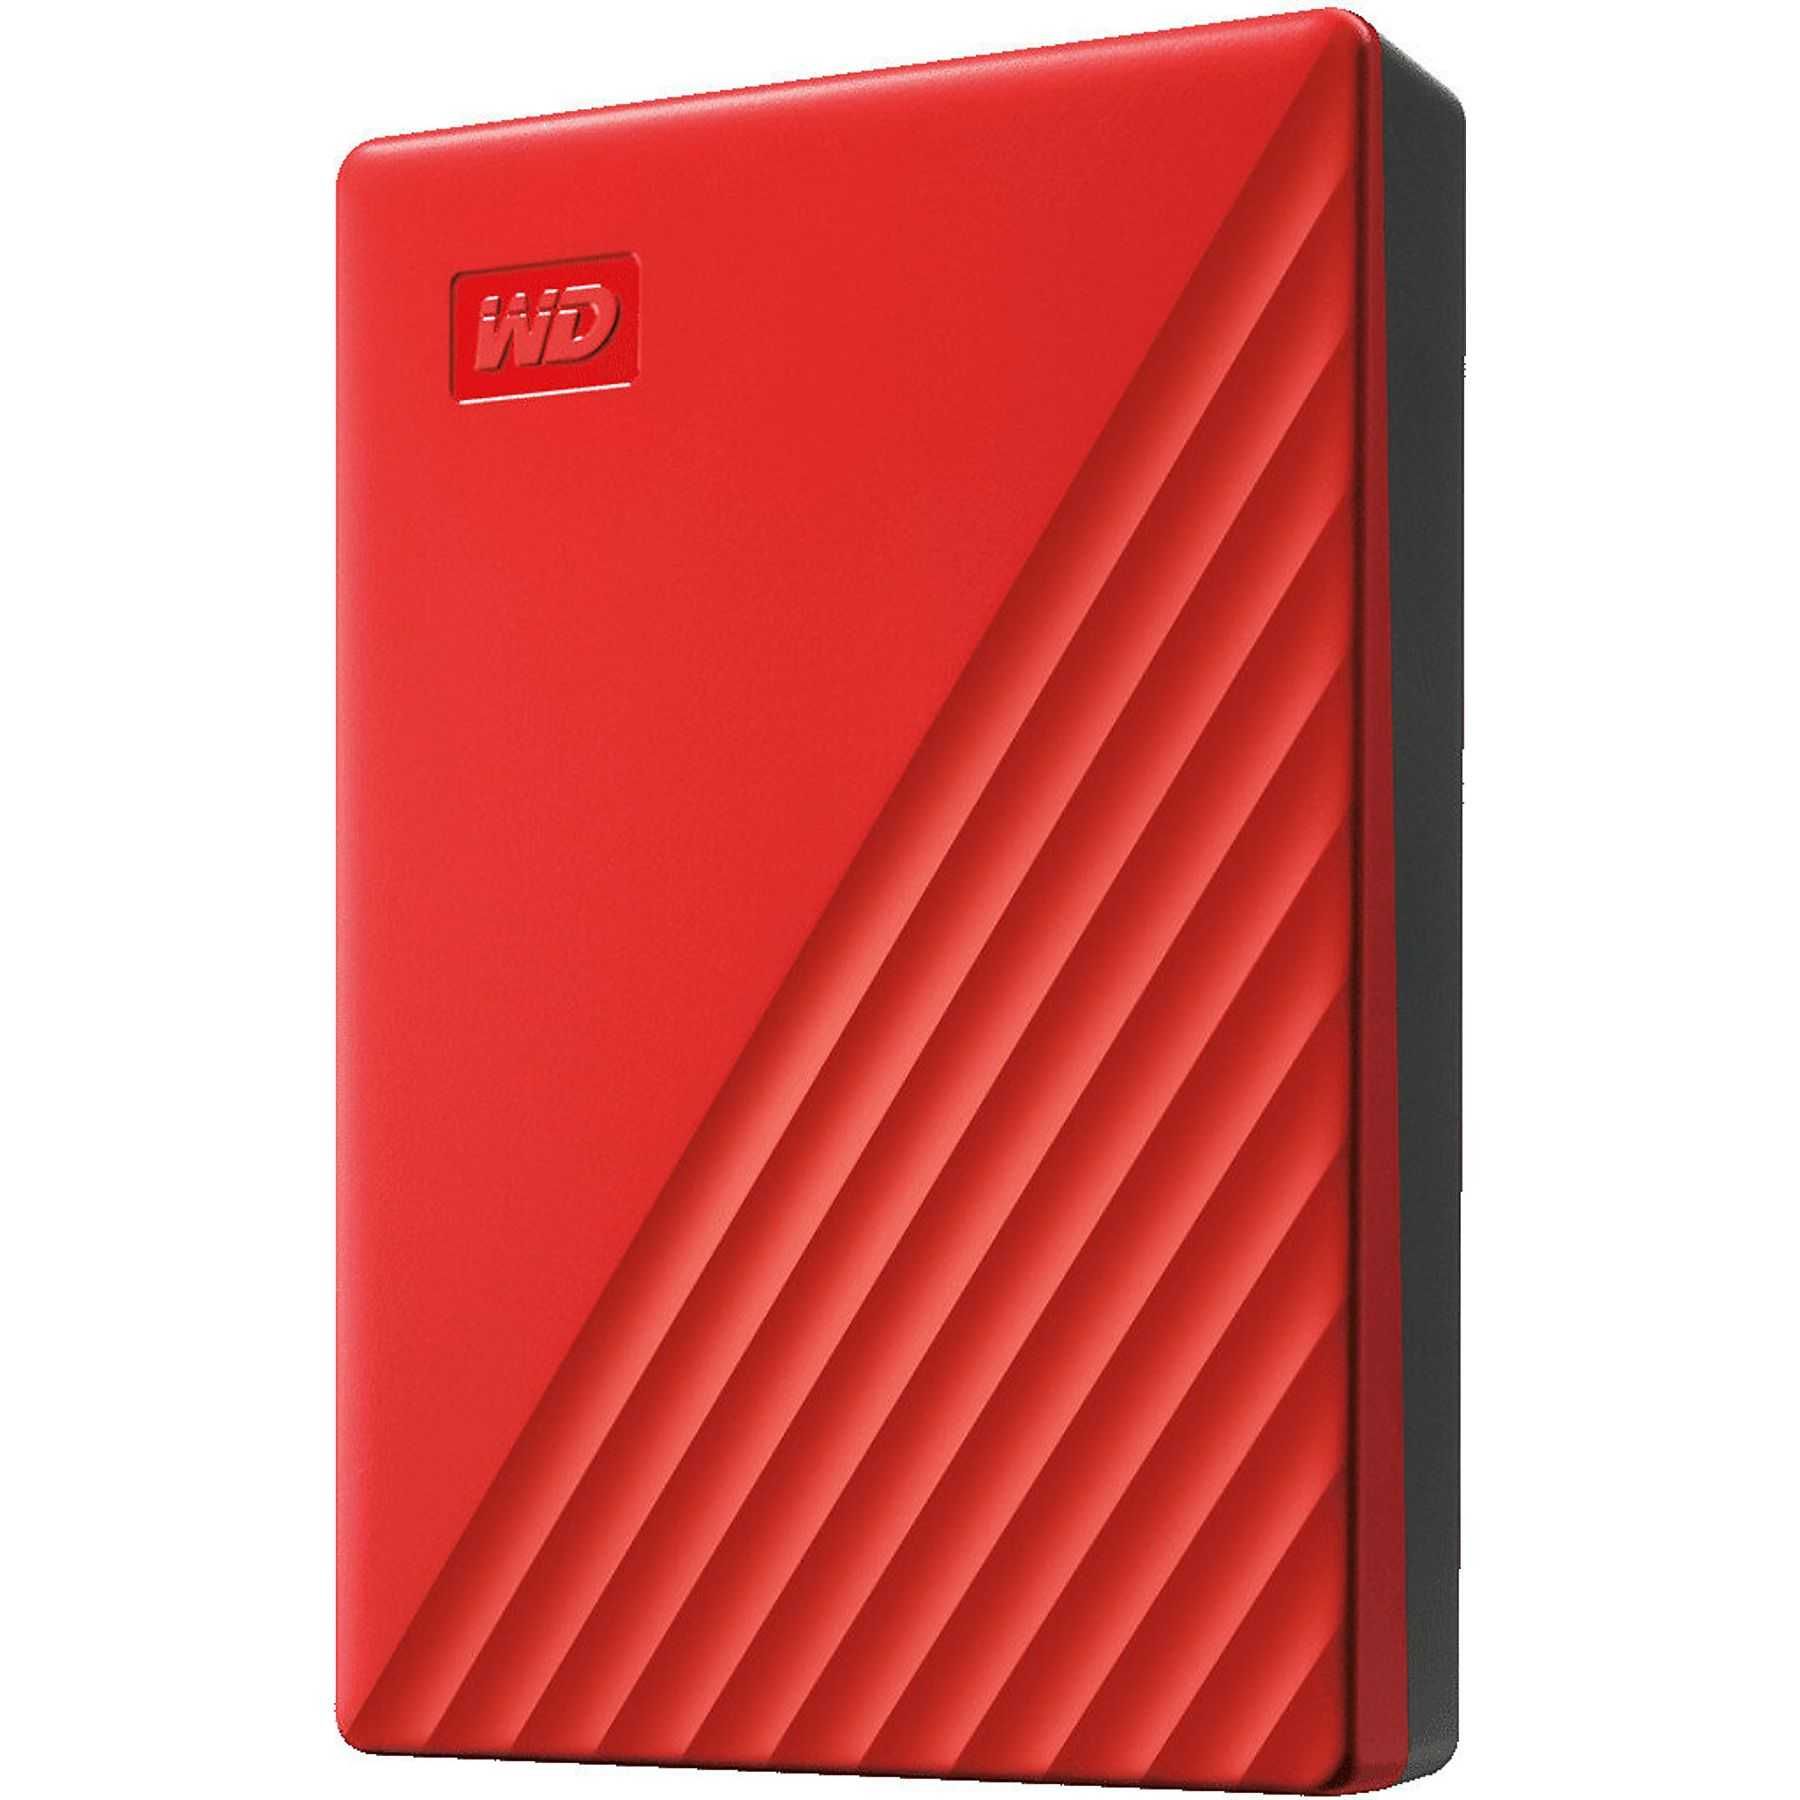 Dysk zewnętrzny WD My Passport 4TB Czerwony WDBPKJ0040BRD-WESN